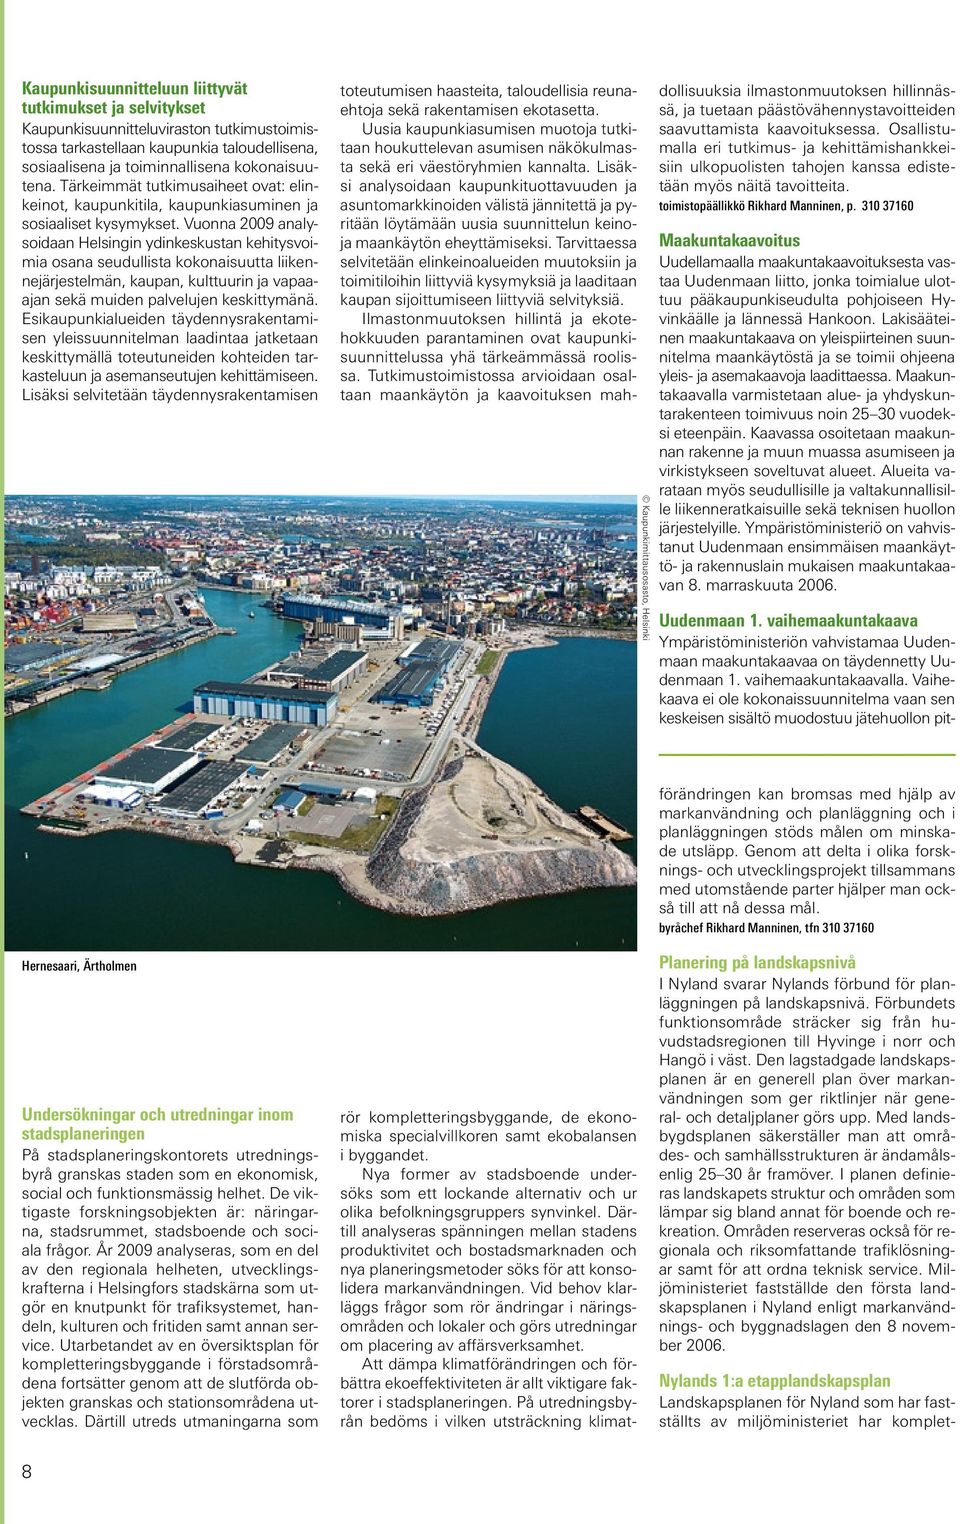 Vuonna 2009 analysoidaan Helsingin ydinkeskustan kehitysvoimia osana seudullista kokonaisuutta liikennejärjestelmän, kaupan, kulttuurin ja vapaaajan sekä muiden palvelujen keskittymänä.